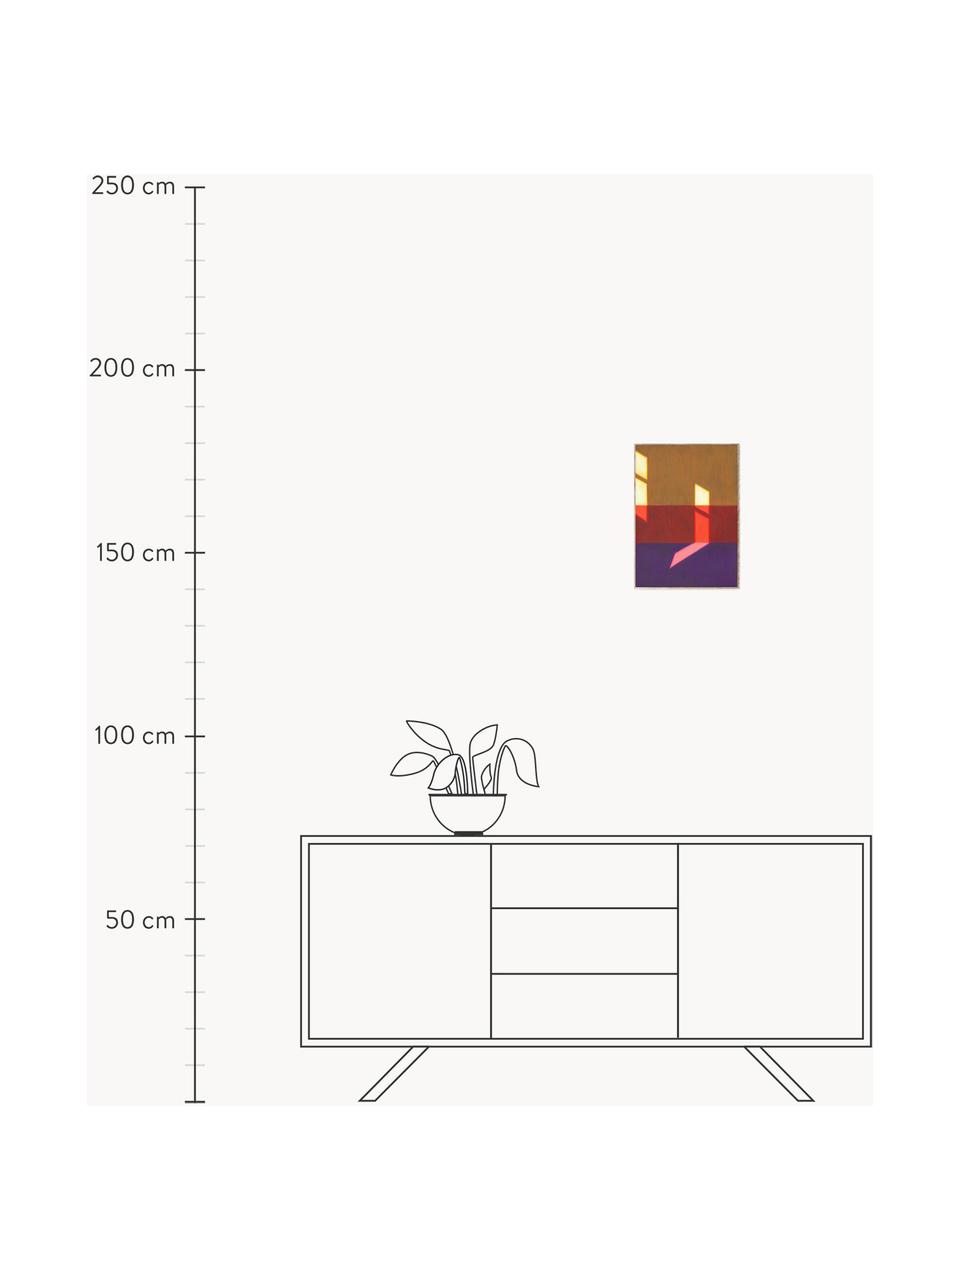 Poster Les Vacances 02, 210 g de papier mat de la marque Hahnemühle, impression numérique avec 10 couleurs résistantes aux UV, Lilas, rouge, jaune, larg. 30 x haut. 40 cm